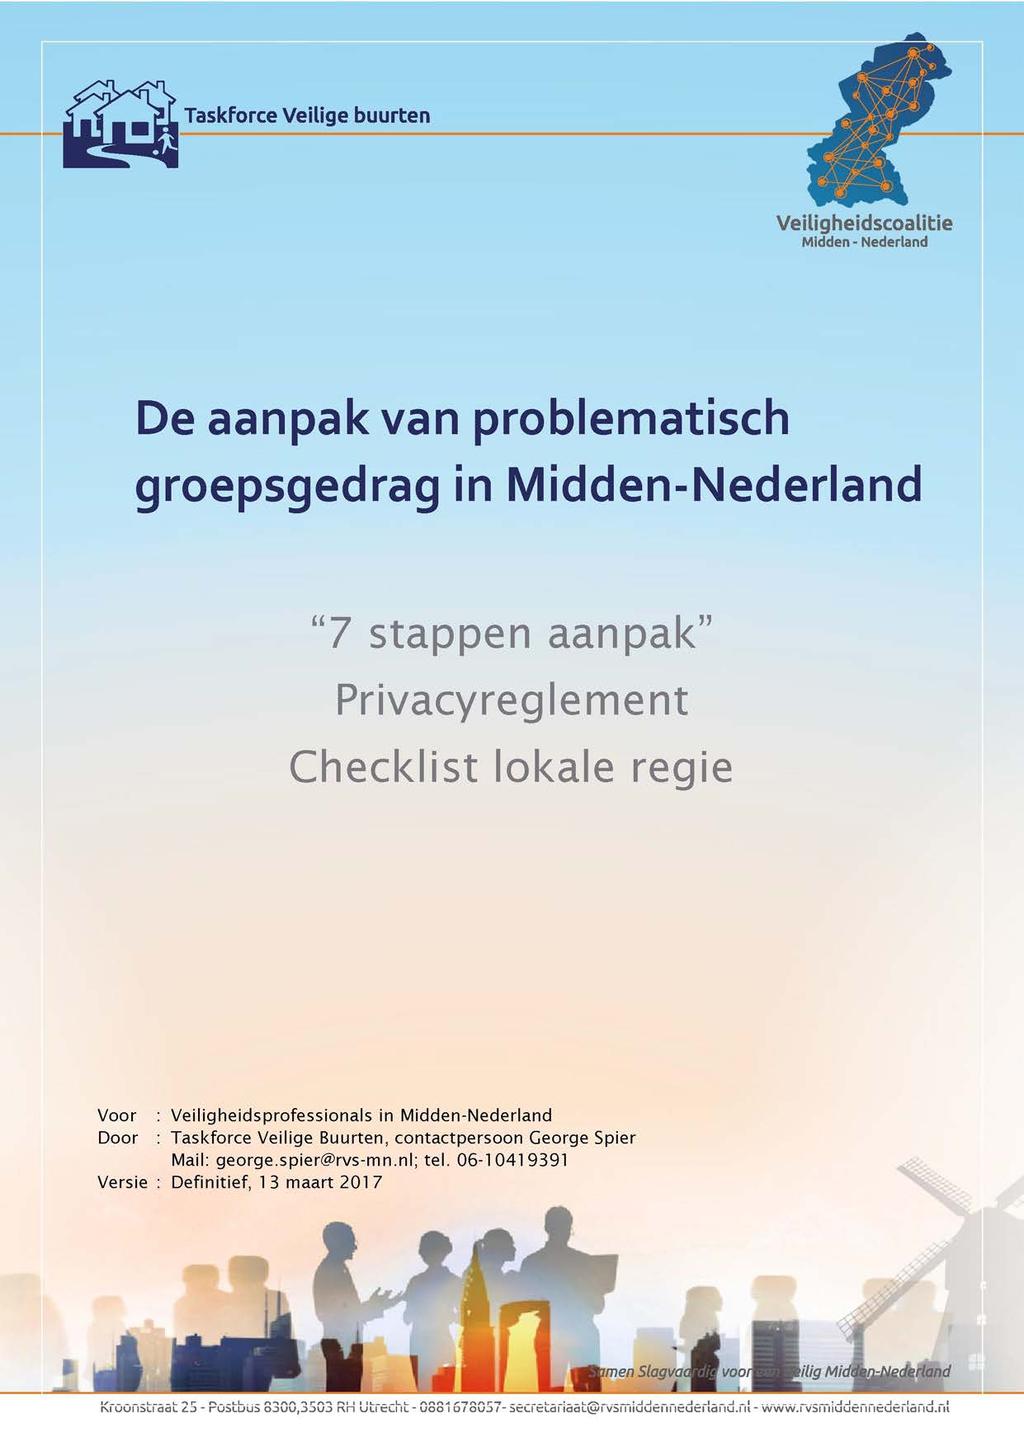 Taskforce Veilige buurten Veiligheidscoalitie De aanpak van problematisch groepsgedrag in Midden-Nederland "7 stappen aanpak" Privacyreglement Checklist lok a e r e gi e v o o r V e iligh e idsp r of